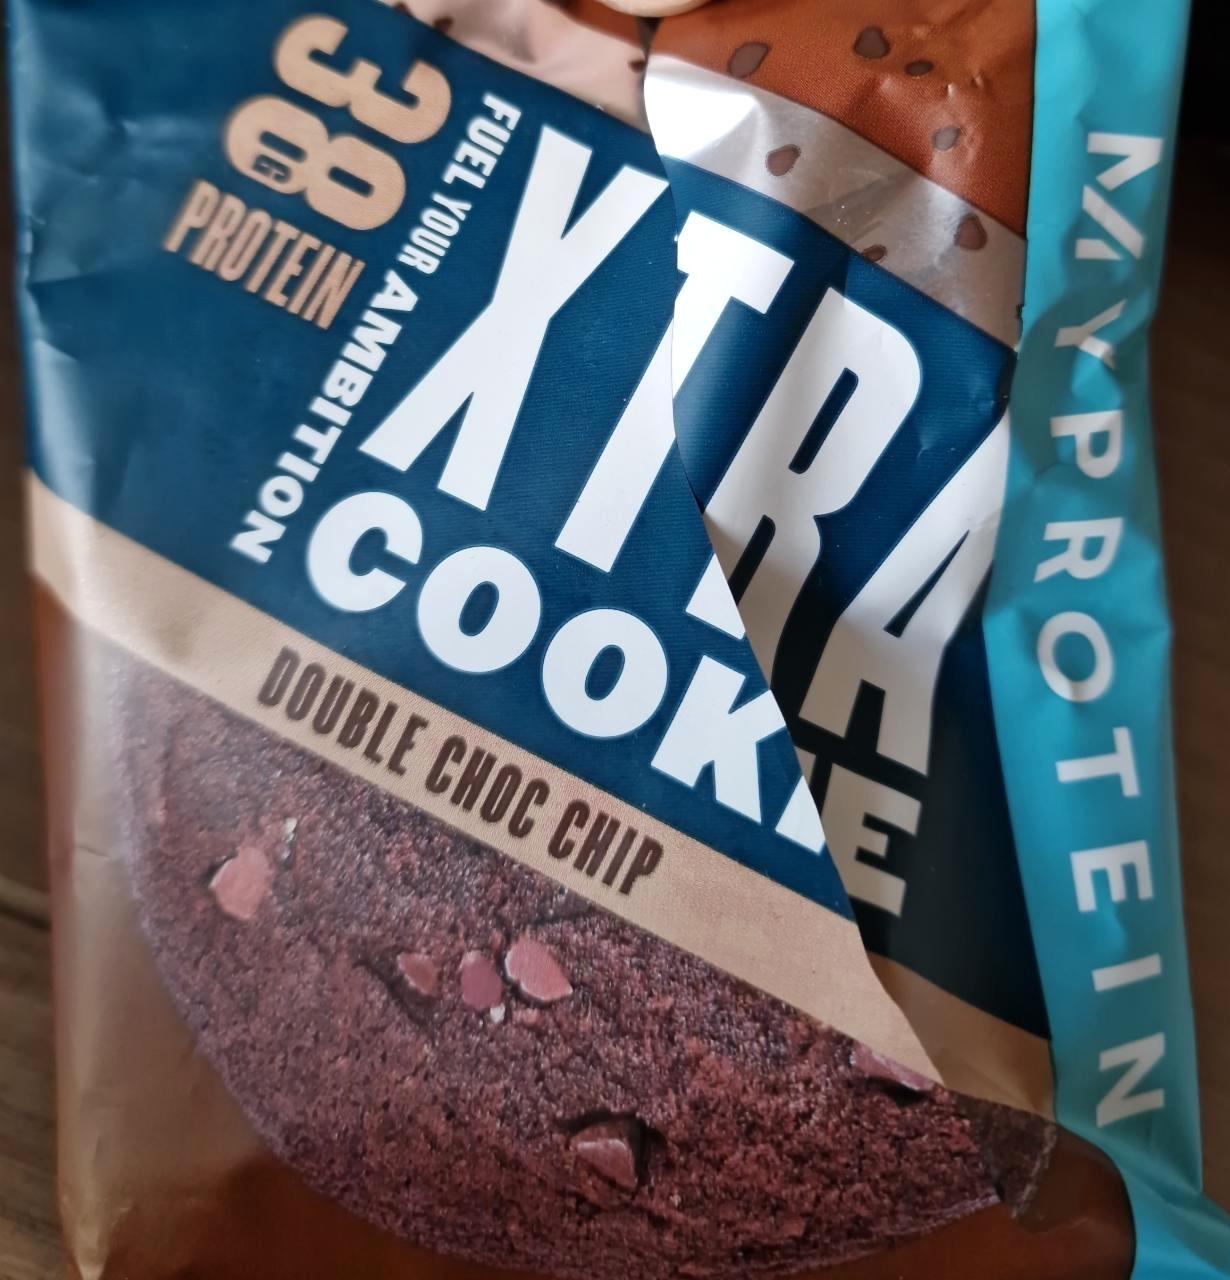 Képek - Xtra Cookie Double choc chip MyProtein